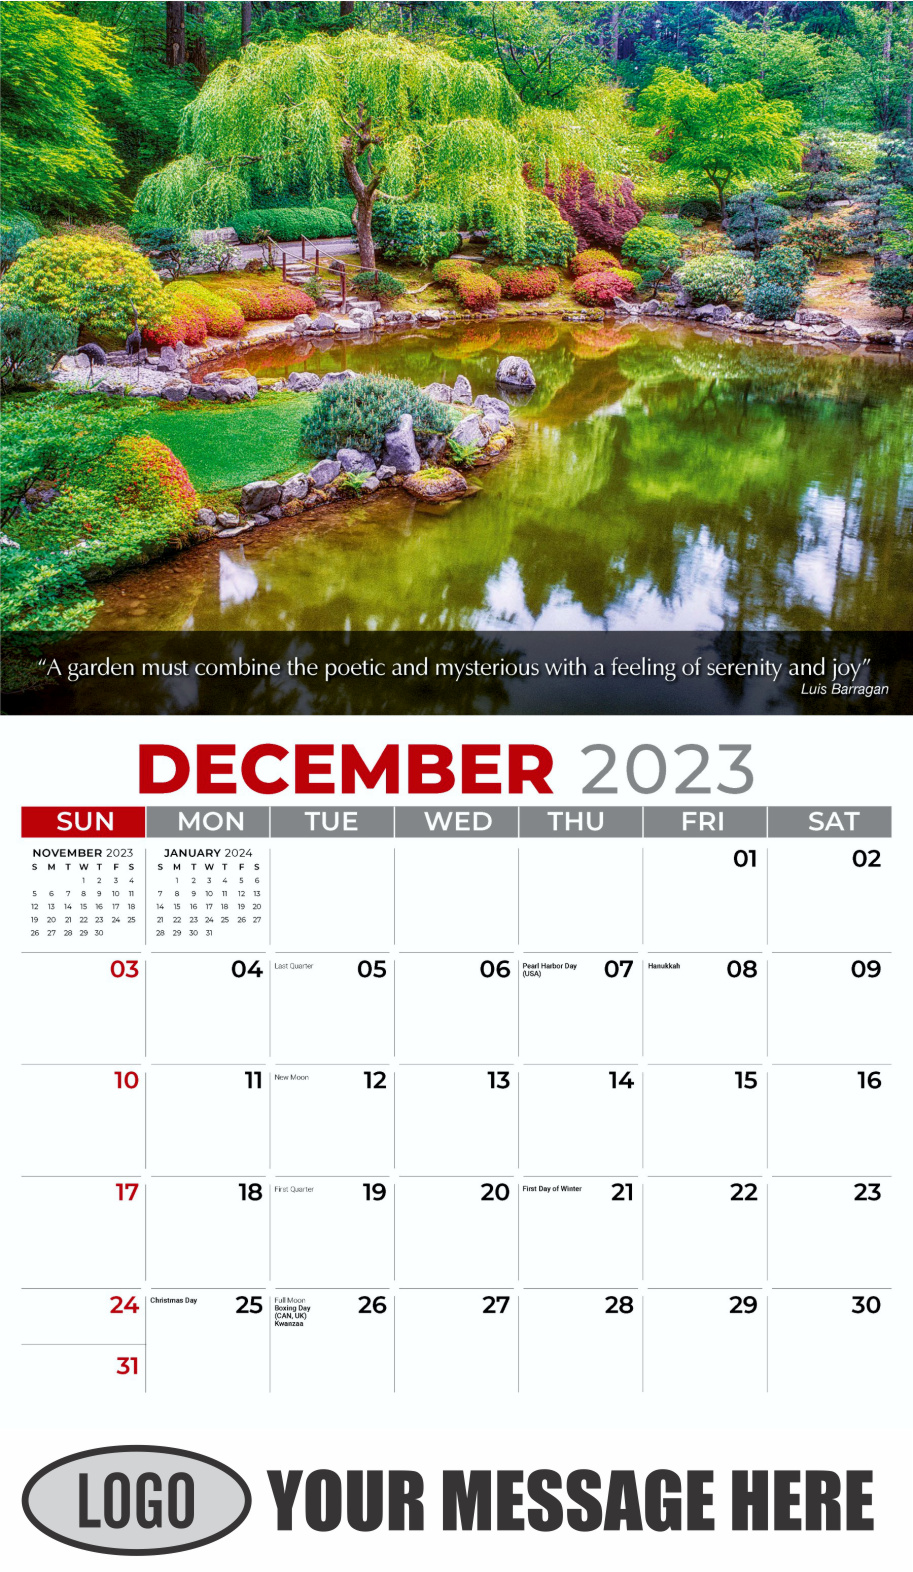 Flowers and Gardens 2024 Business Advertising Calendar - December_a